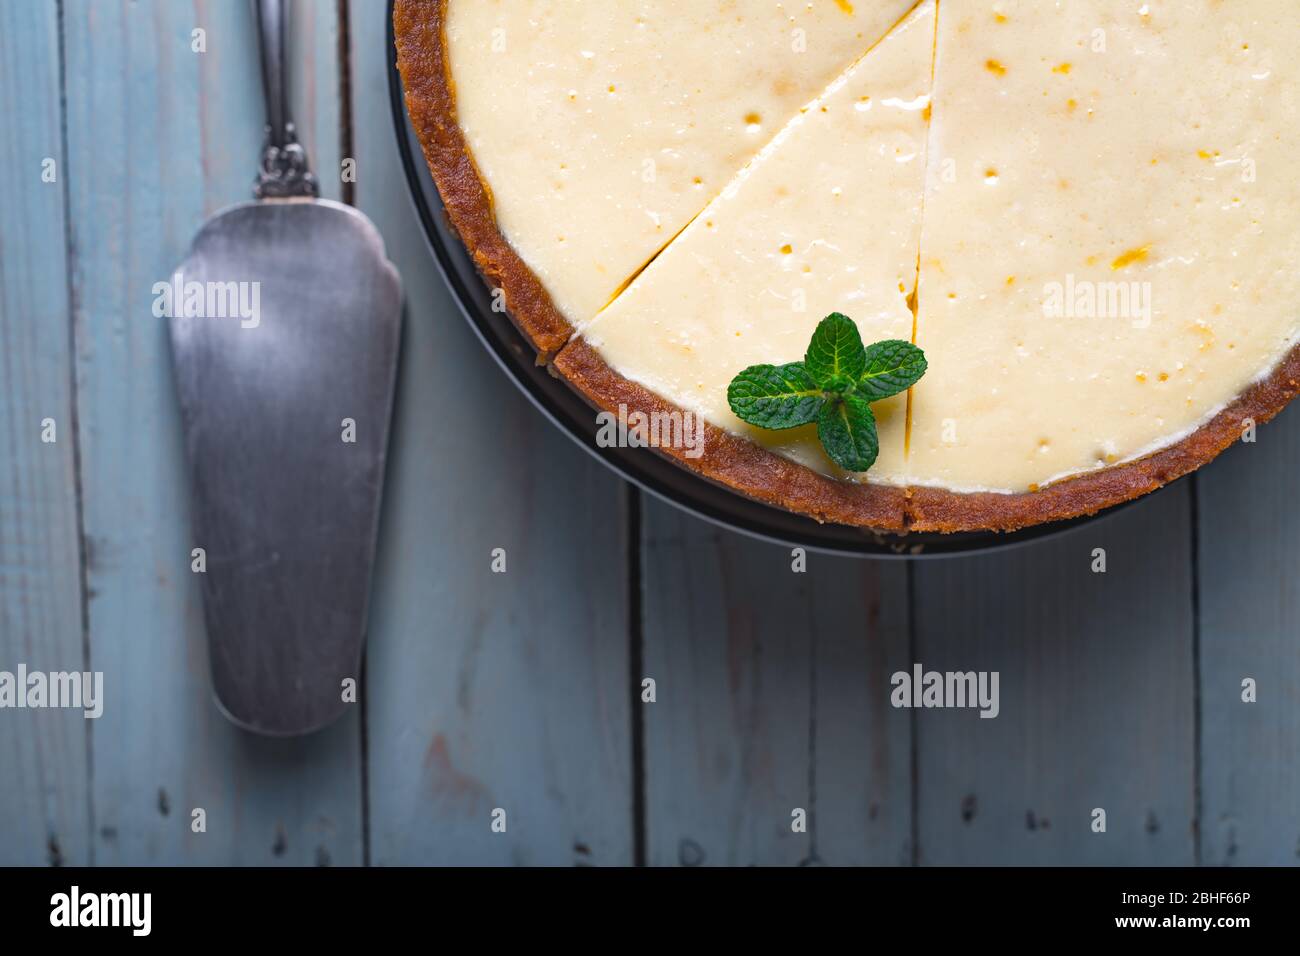 Flugzeug runden klassischen New York Käsekuchen und seine Scheibe mit Zweig Minze auf einem Teller auf einem Holztisch. Das Konzept der Bäckerei und Süßspeisen Desserts Stockfoto